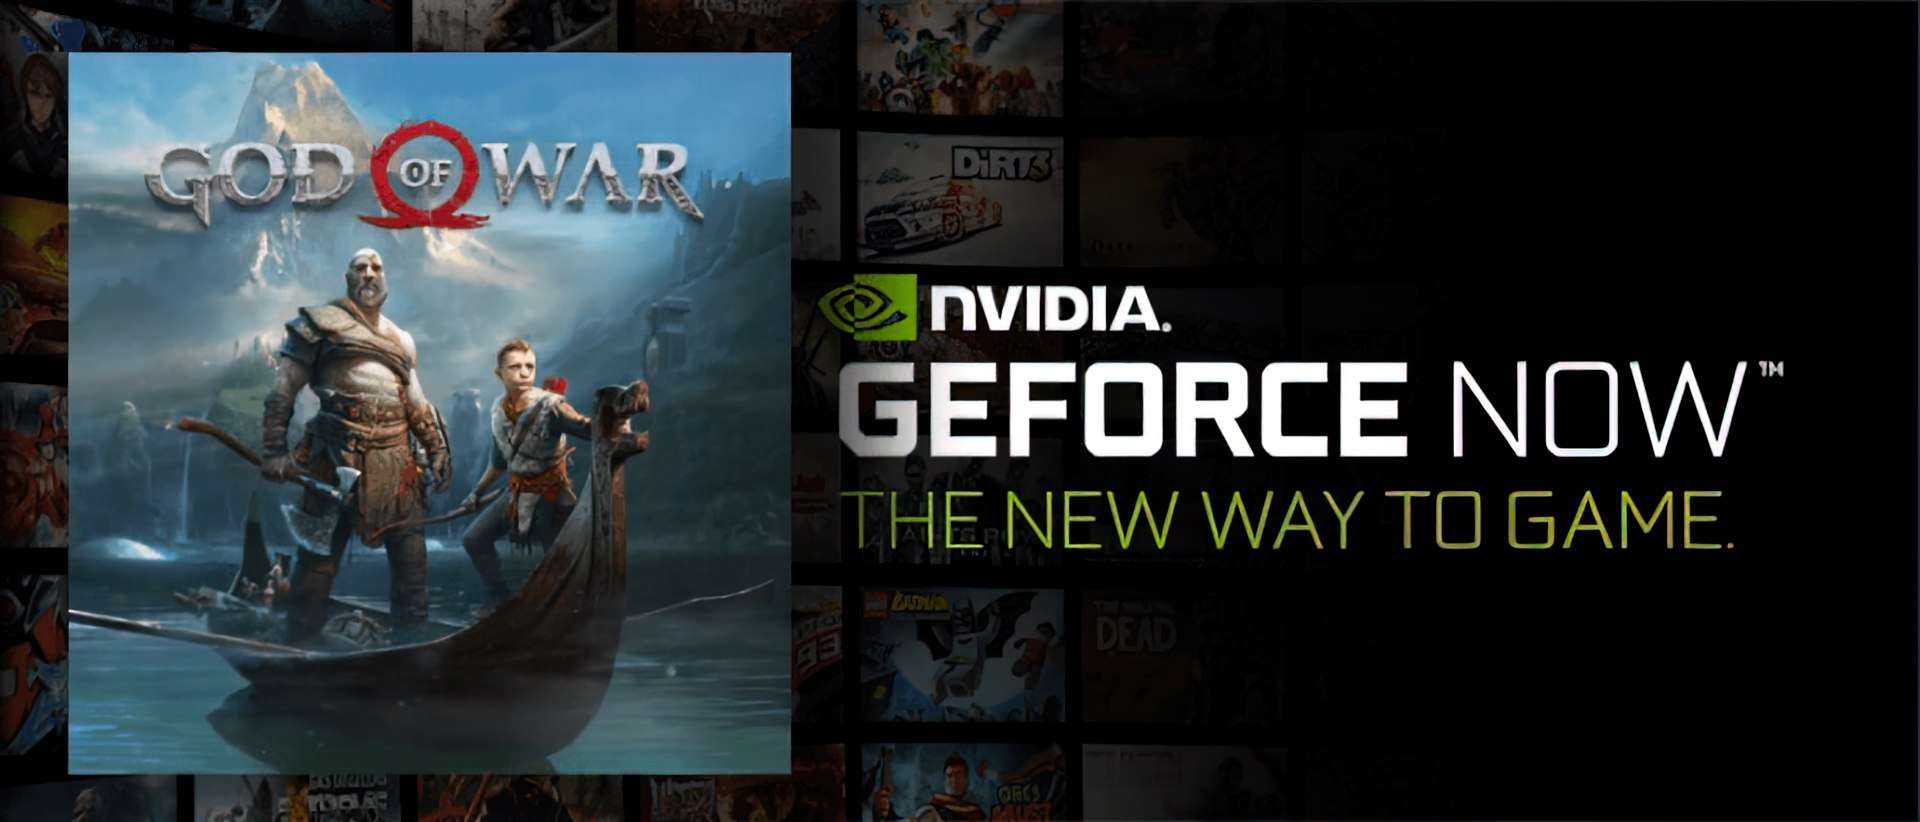 Утечка Nvidia GeForce Now показывает, что God of War выходит на платформу